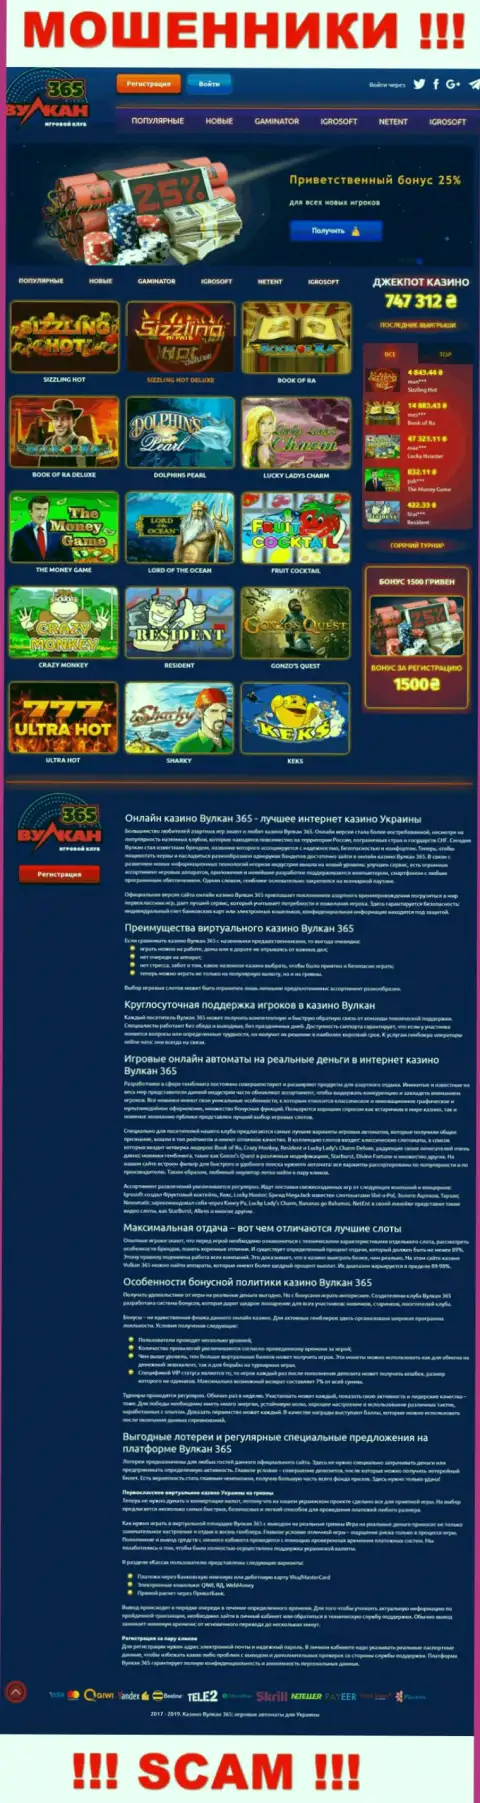 Официальный web-ресурс Vulkan365 - это яркая картинка для завлечения лохов